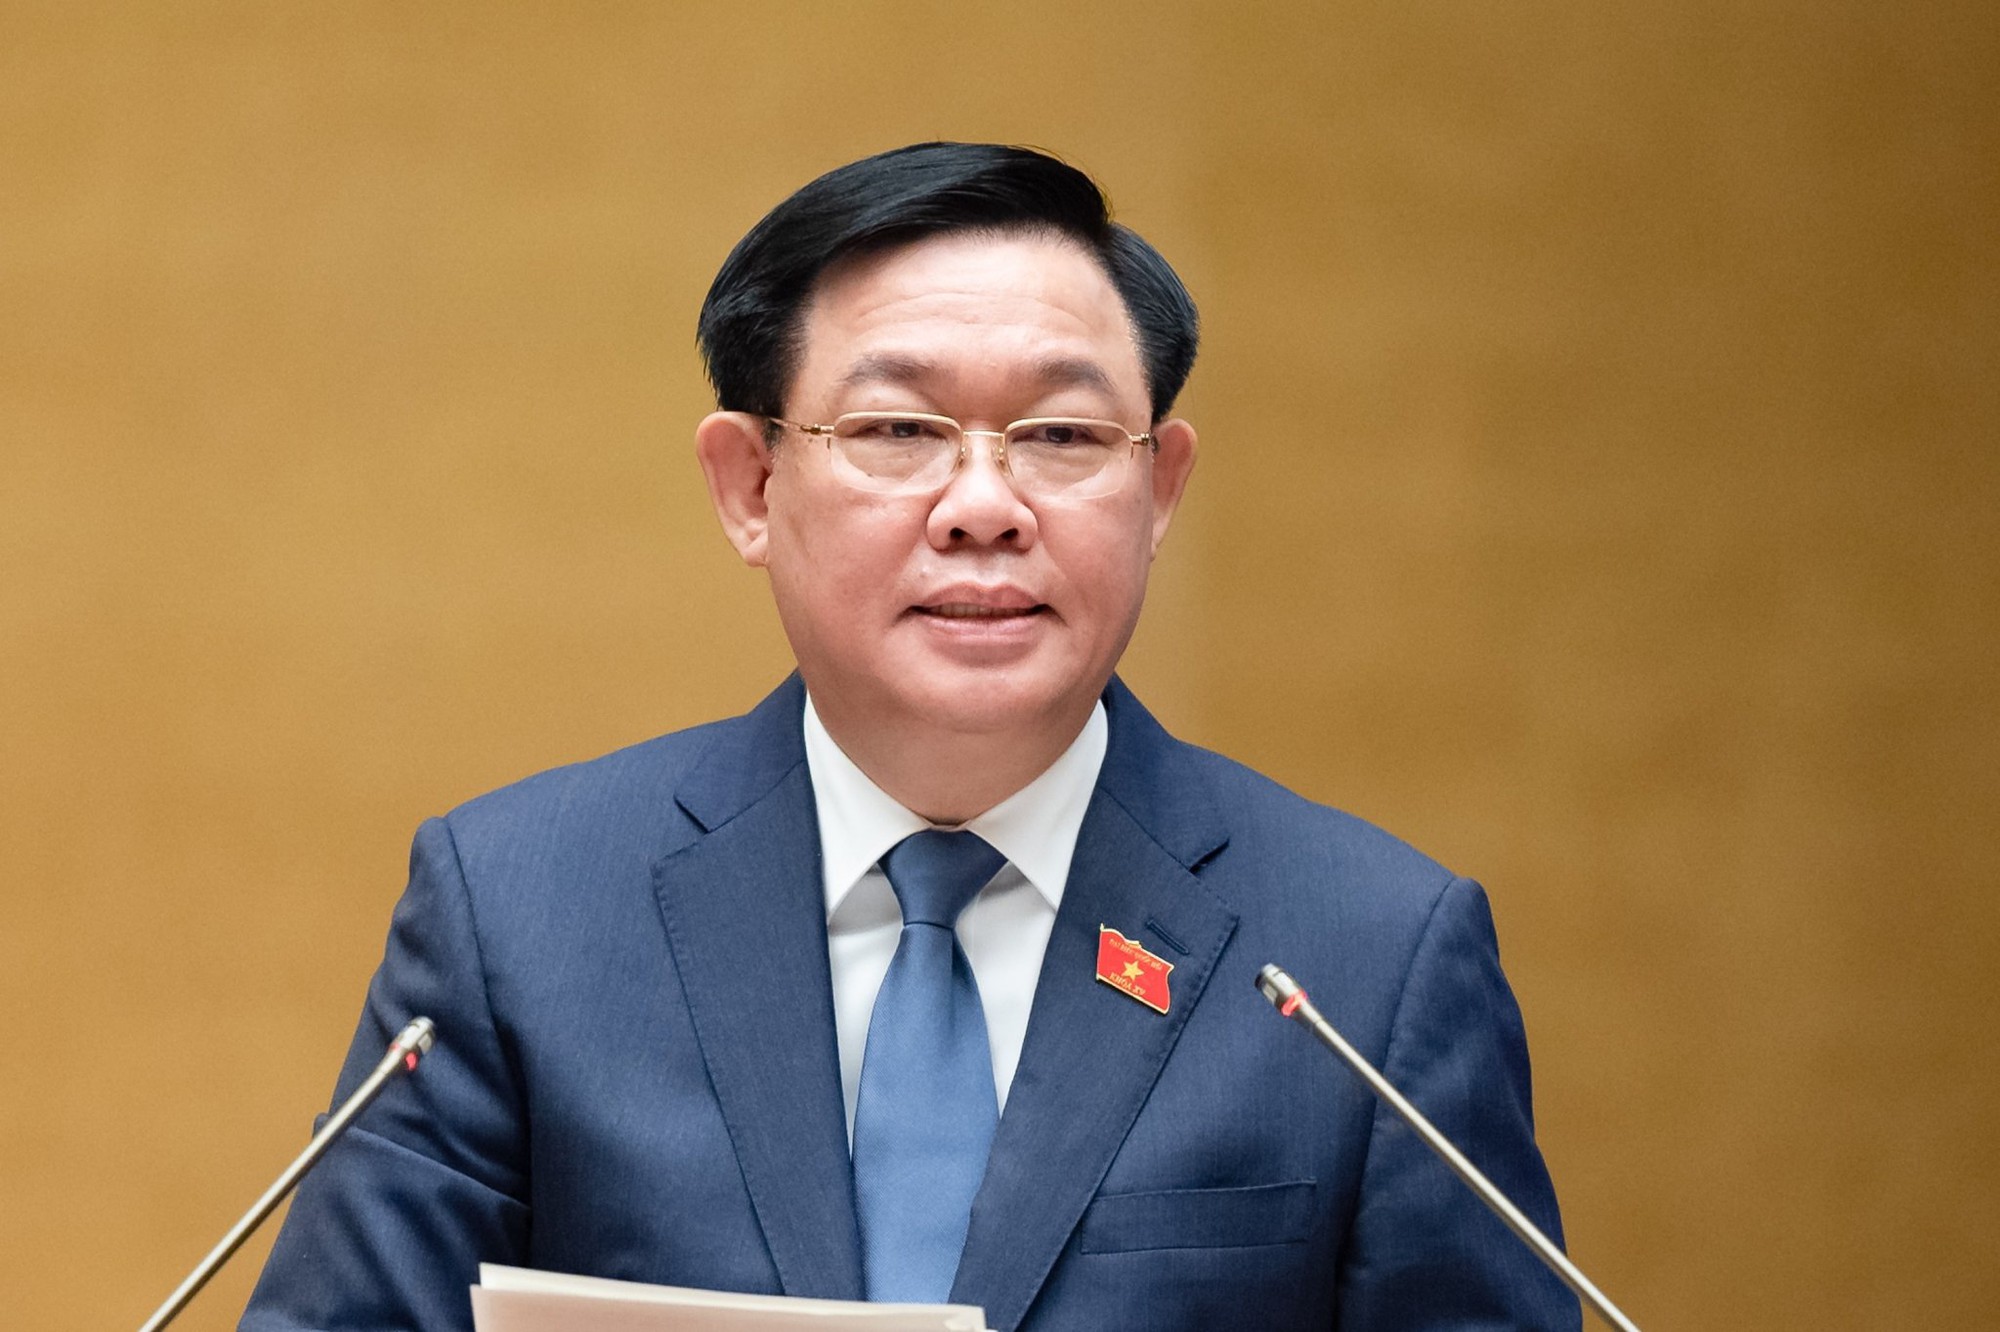 Phó Thủ tướng Trần Lưu Quang: Chúng tôi nhận khuyết điểm với bà con vùng đồng bào dân tộc thiểu số - Ảnh 2.